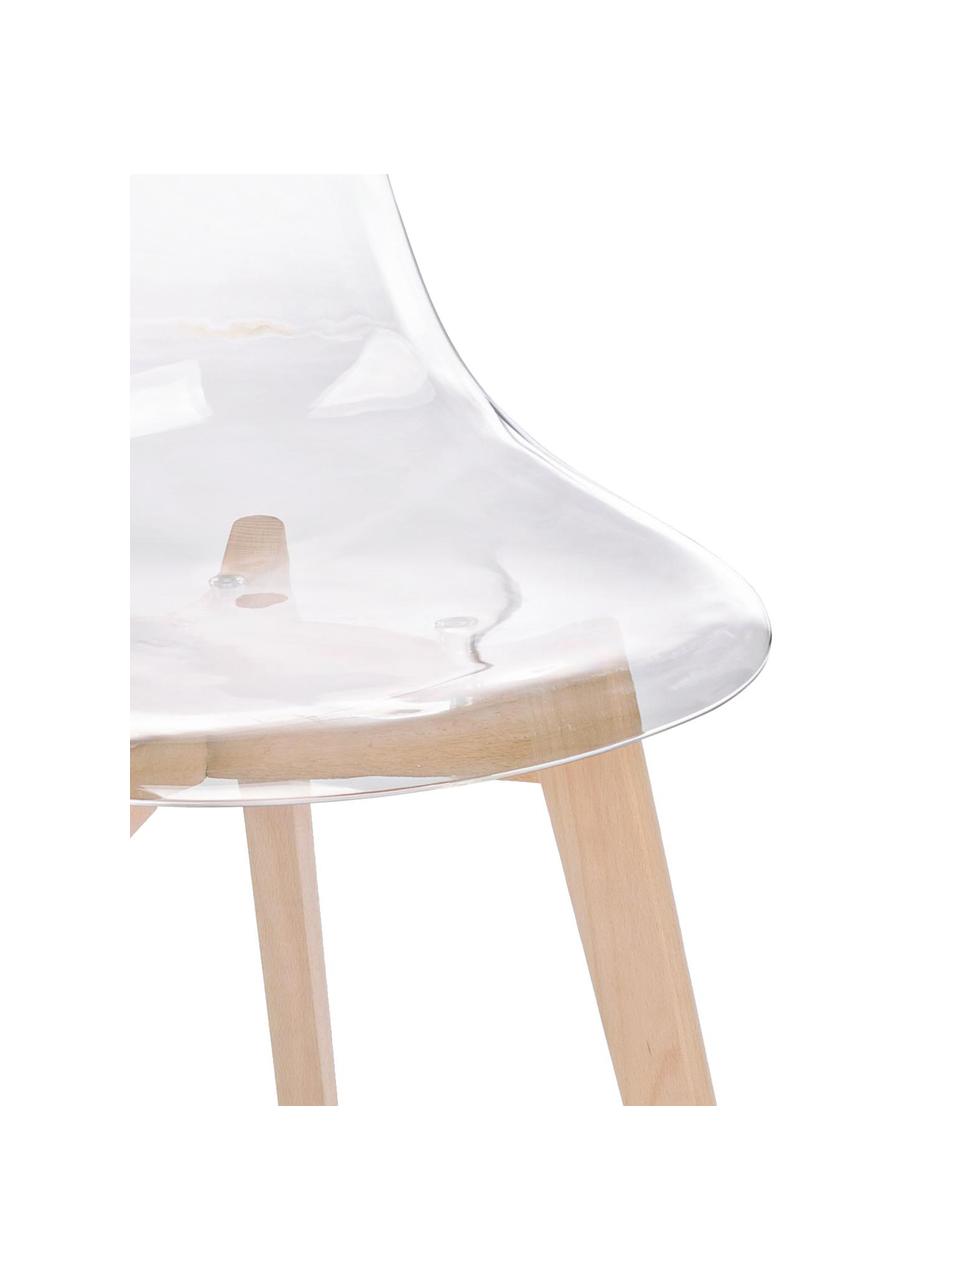 Krzesło Easy, 2 szt., Nogi: drewno bukowe, Transparentny, drewno bukowe, S 51 x G 47 cm